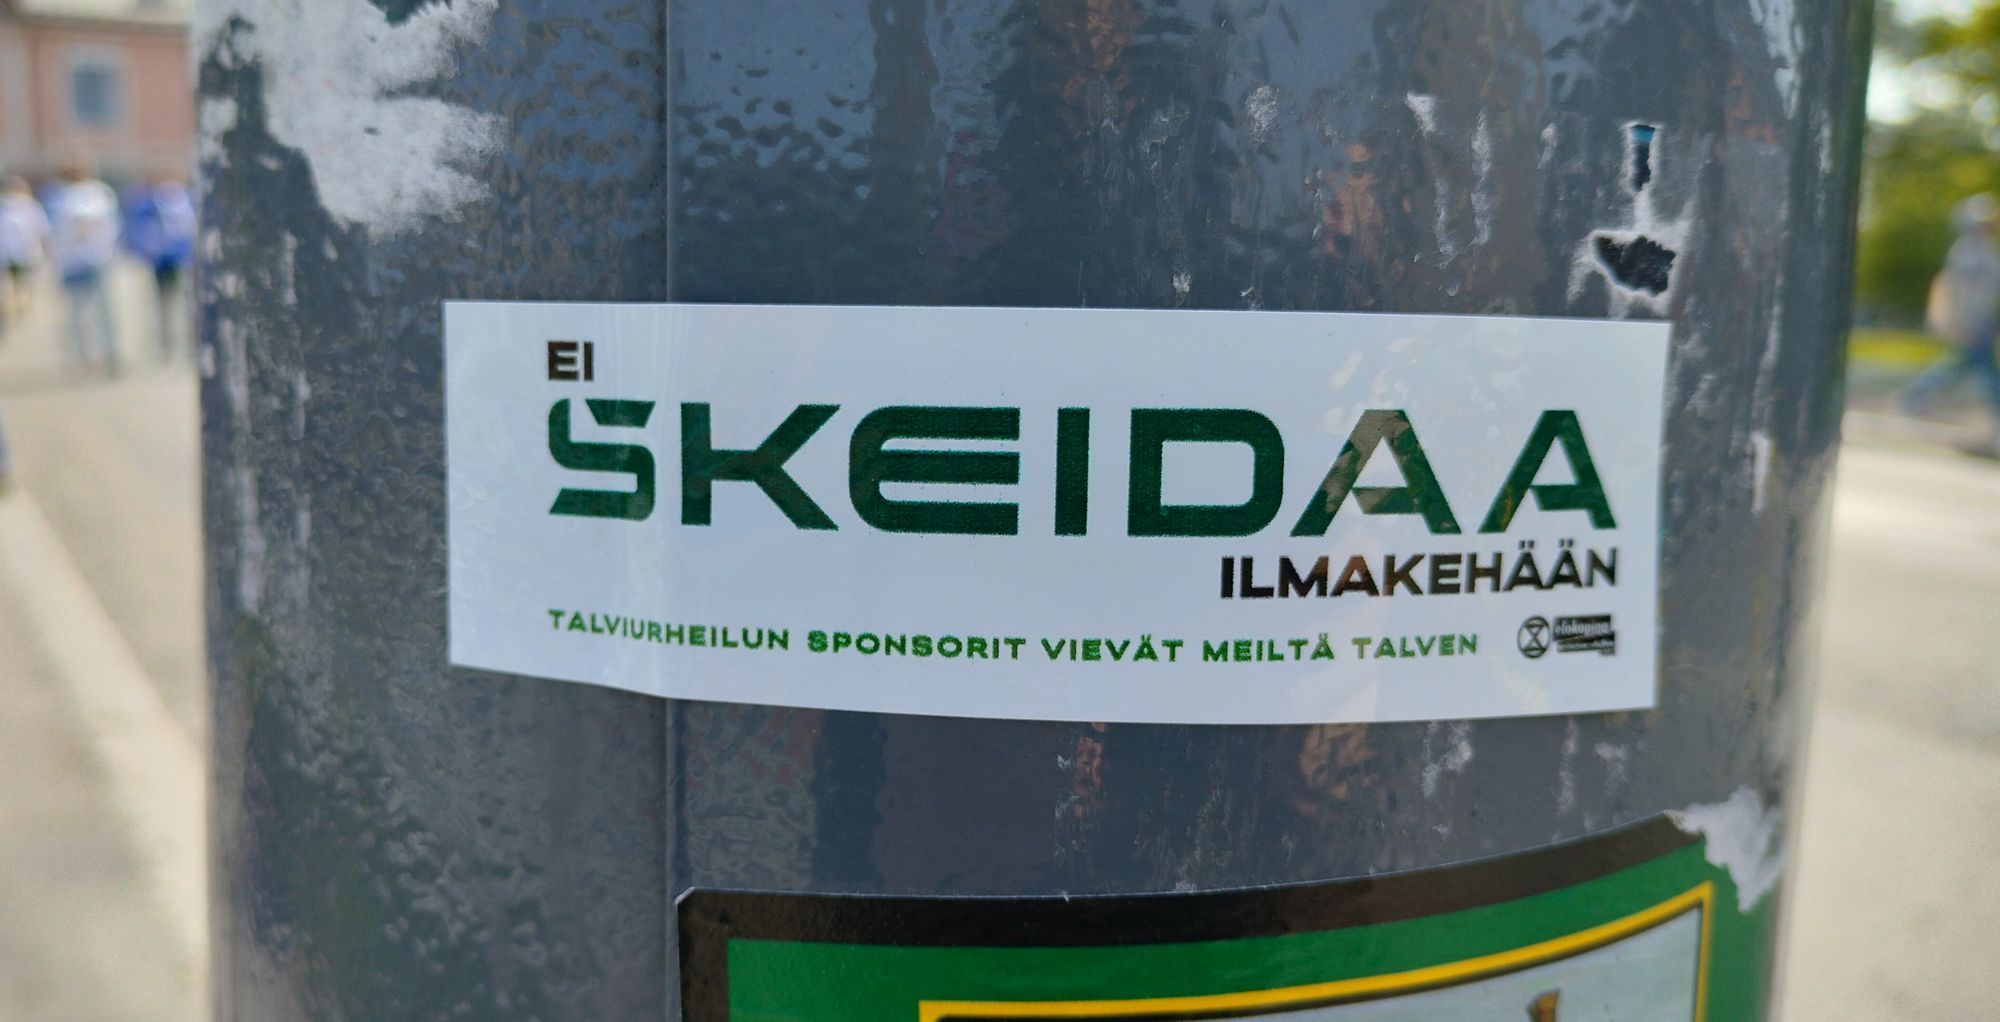 Metallipintaan liimattu tarra jossa teksti: Ei skeidaa ilmakehään – talviurheilun sponsorit vievät meiltä talven + EK-logo.